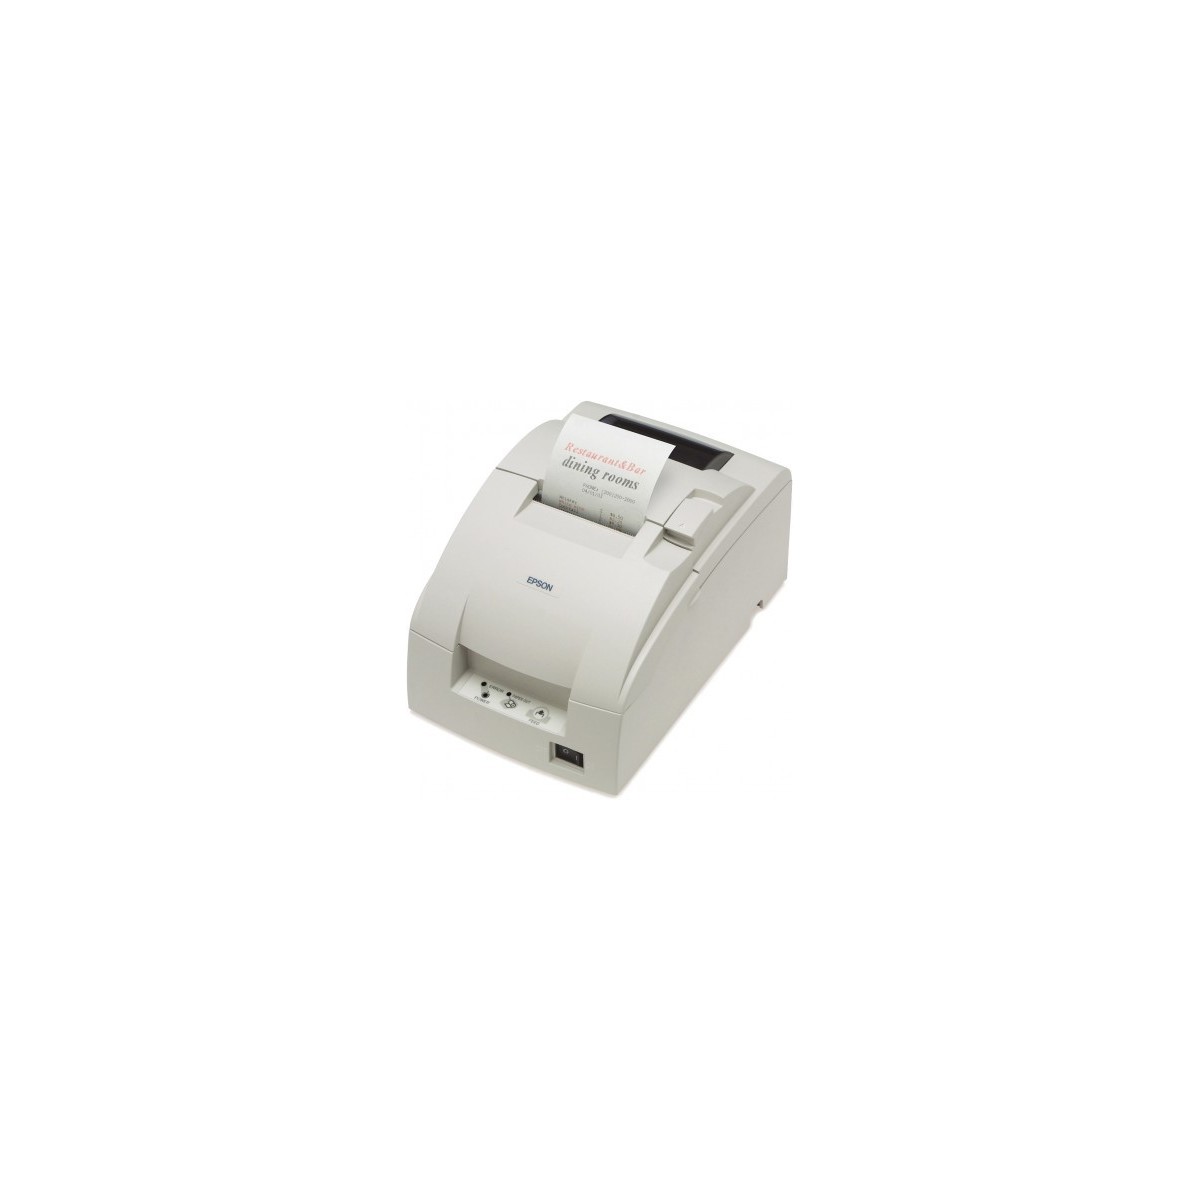 Epson TM-U220B (007A0): USB - PS - ECW - Dot matrix - POS printer - 4.7 lps - 1.2 x 3.1 mm - 17.8 cpi - 60 - 85 µm